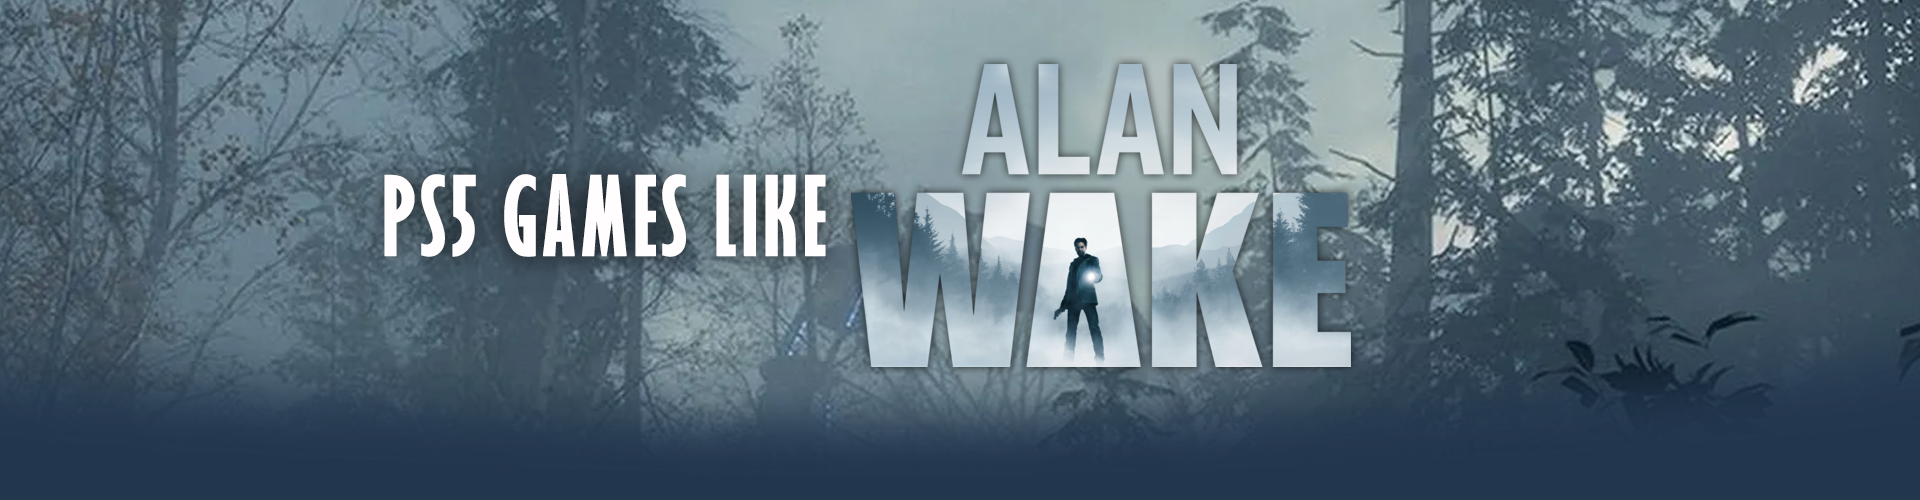 PS5 Games Like Alan Wake